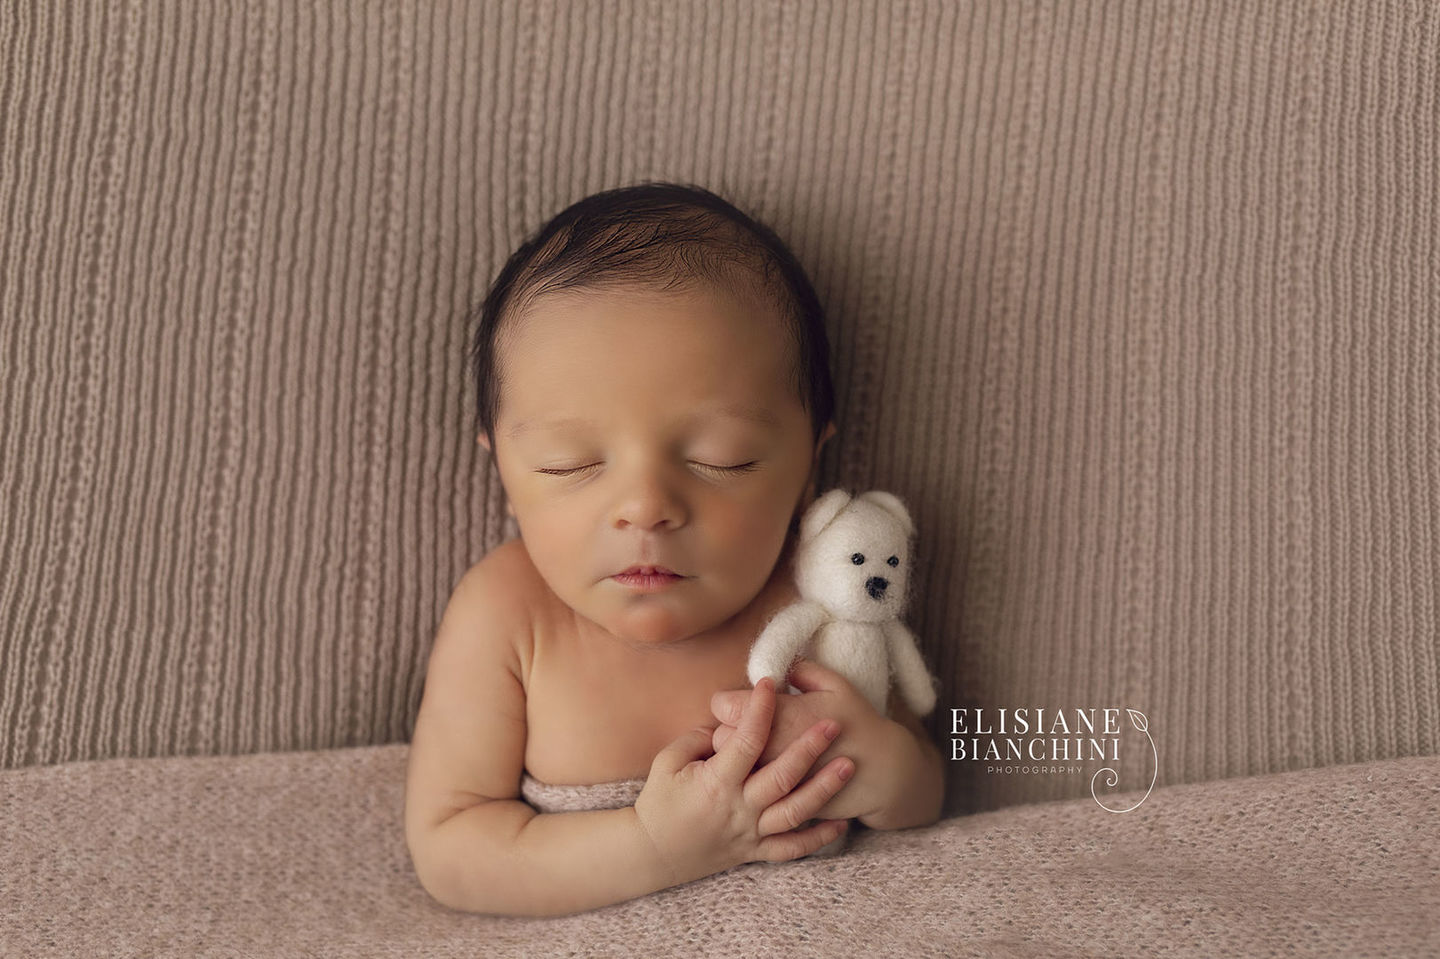 4 cose da sapere sulla fotografia Newborn - Elisiane Bianchini